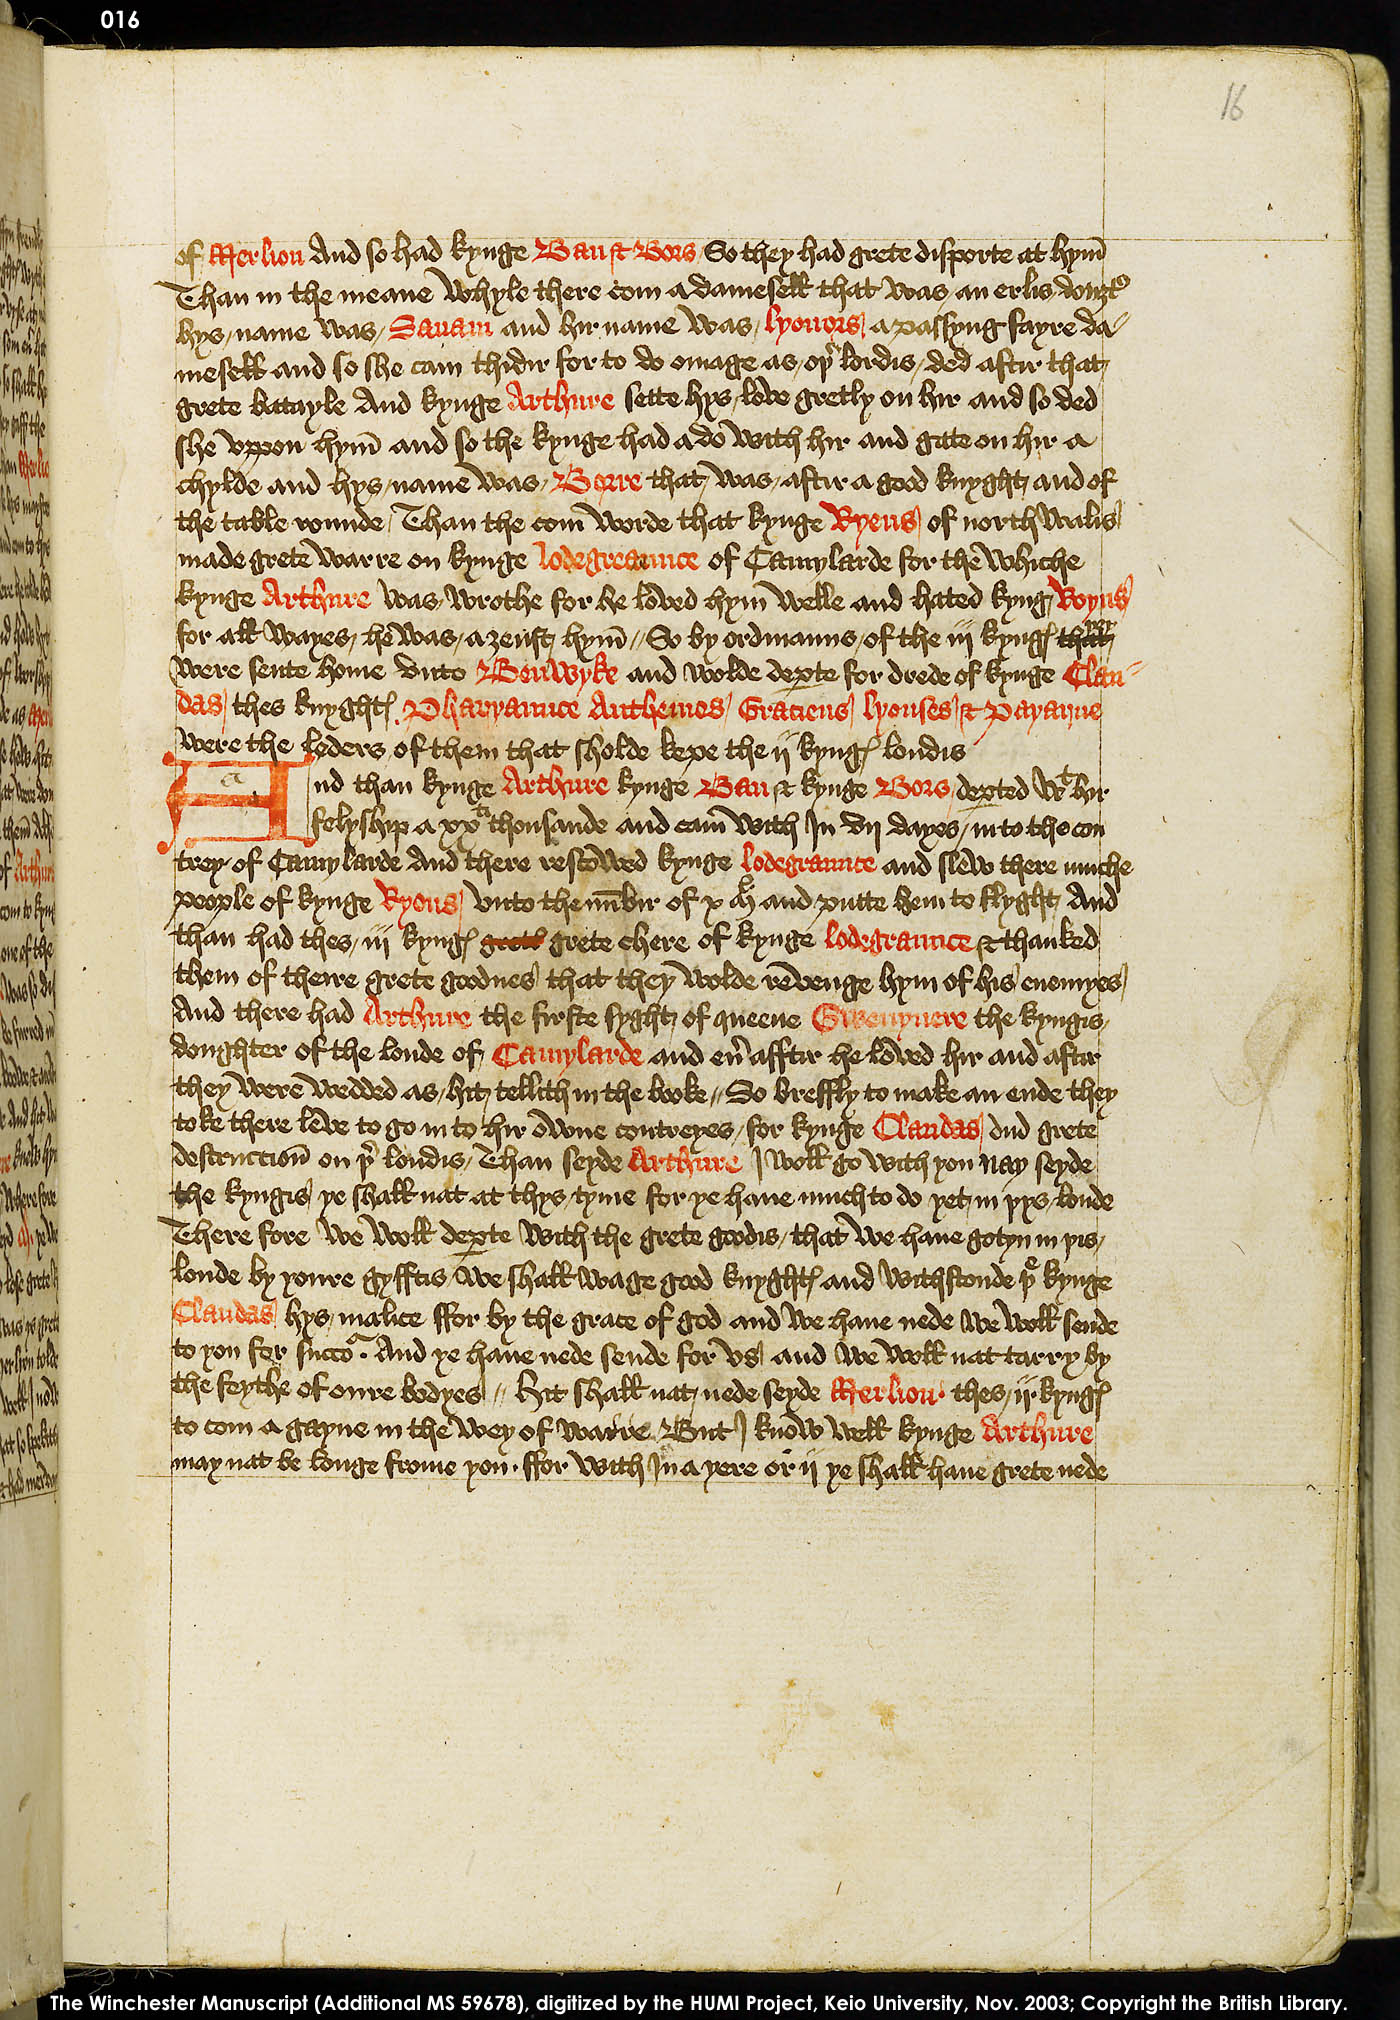 Folio 16r